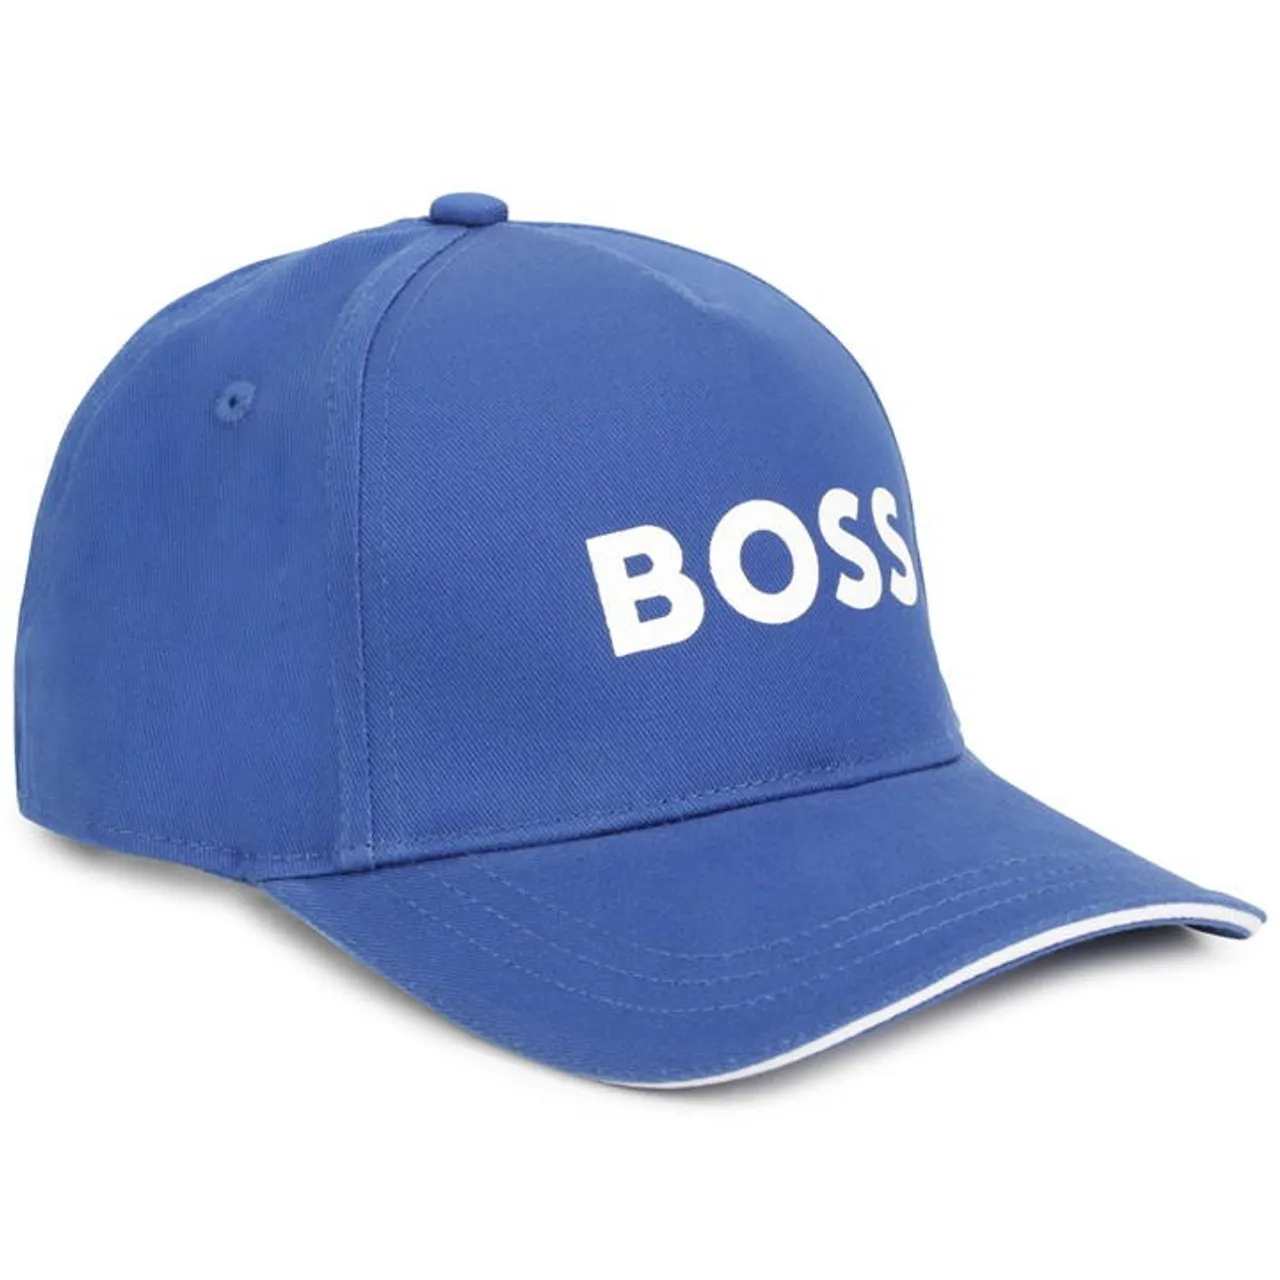 Boss Boss Lgo Cap Jn32 - Blue